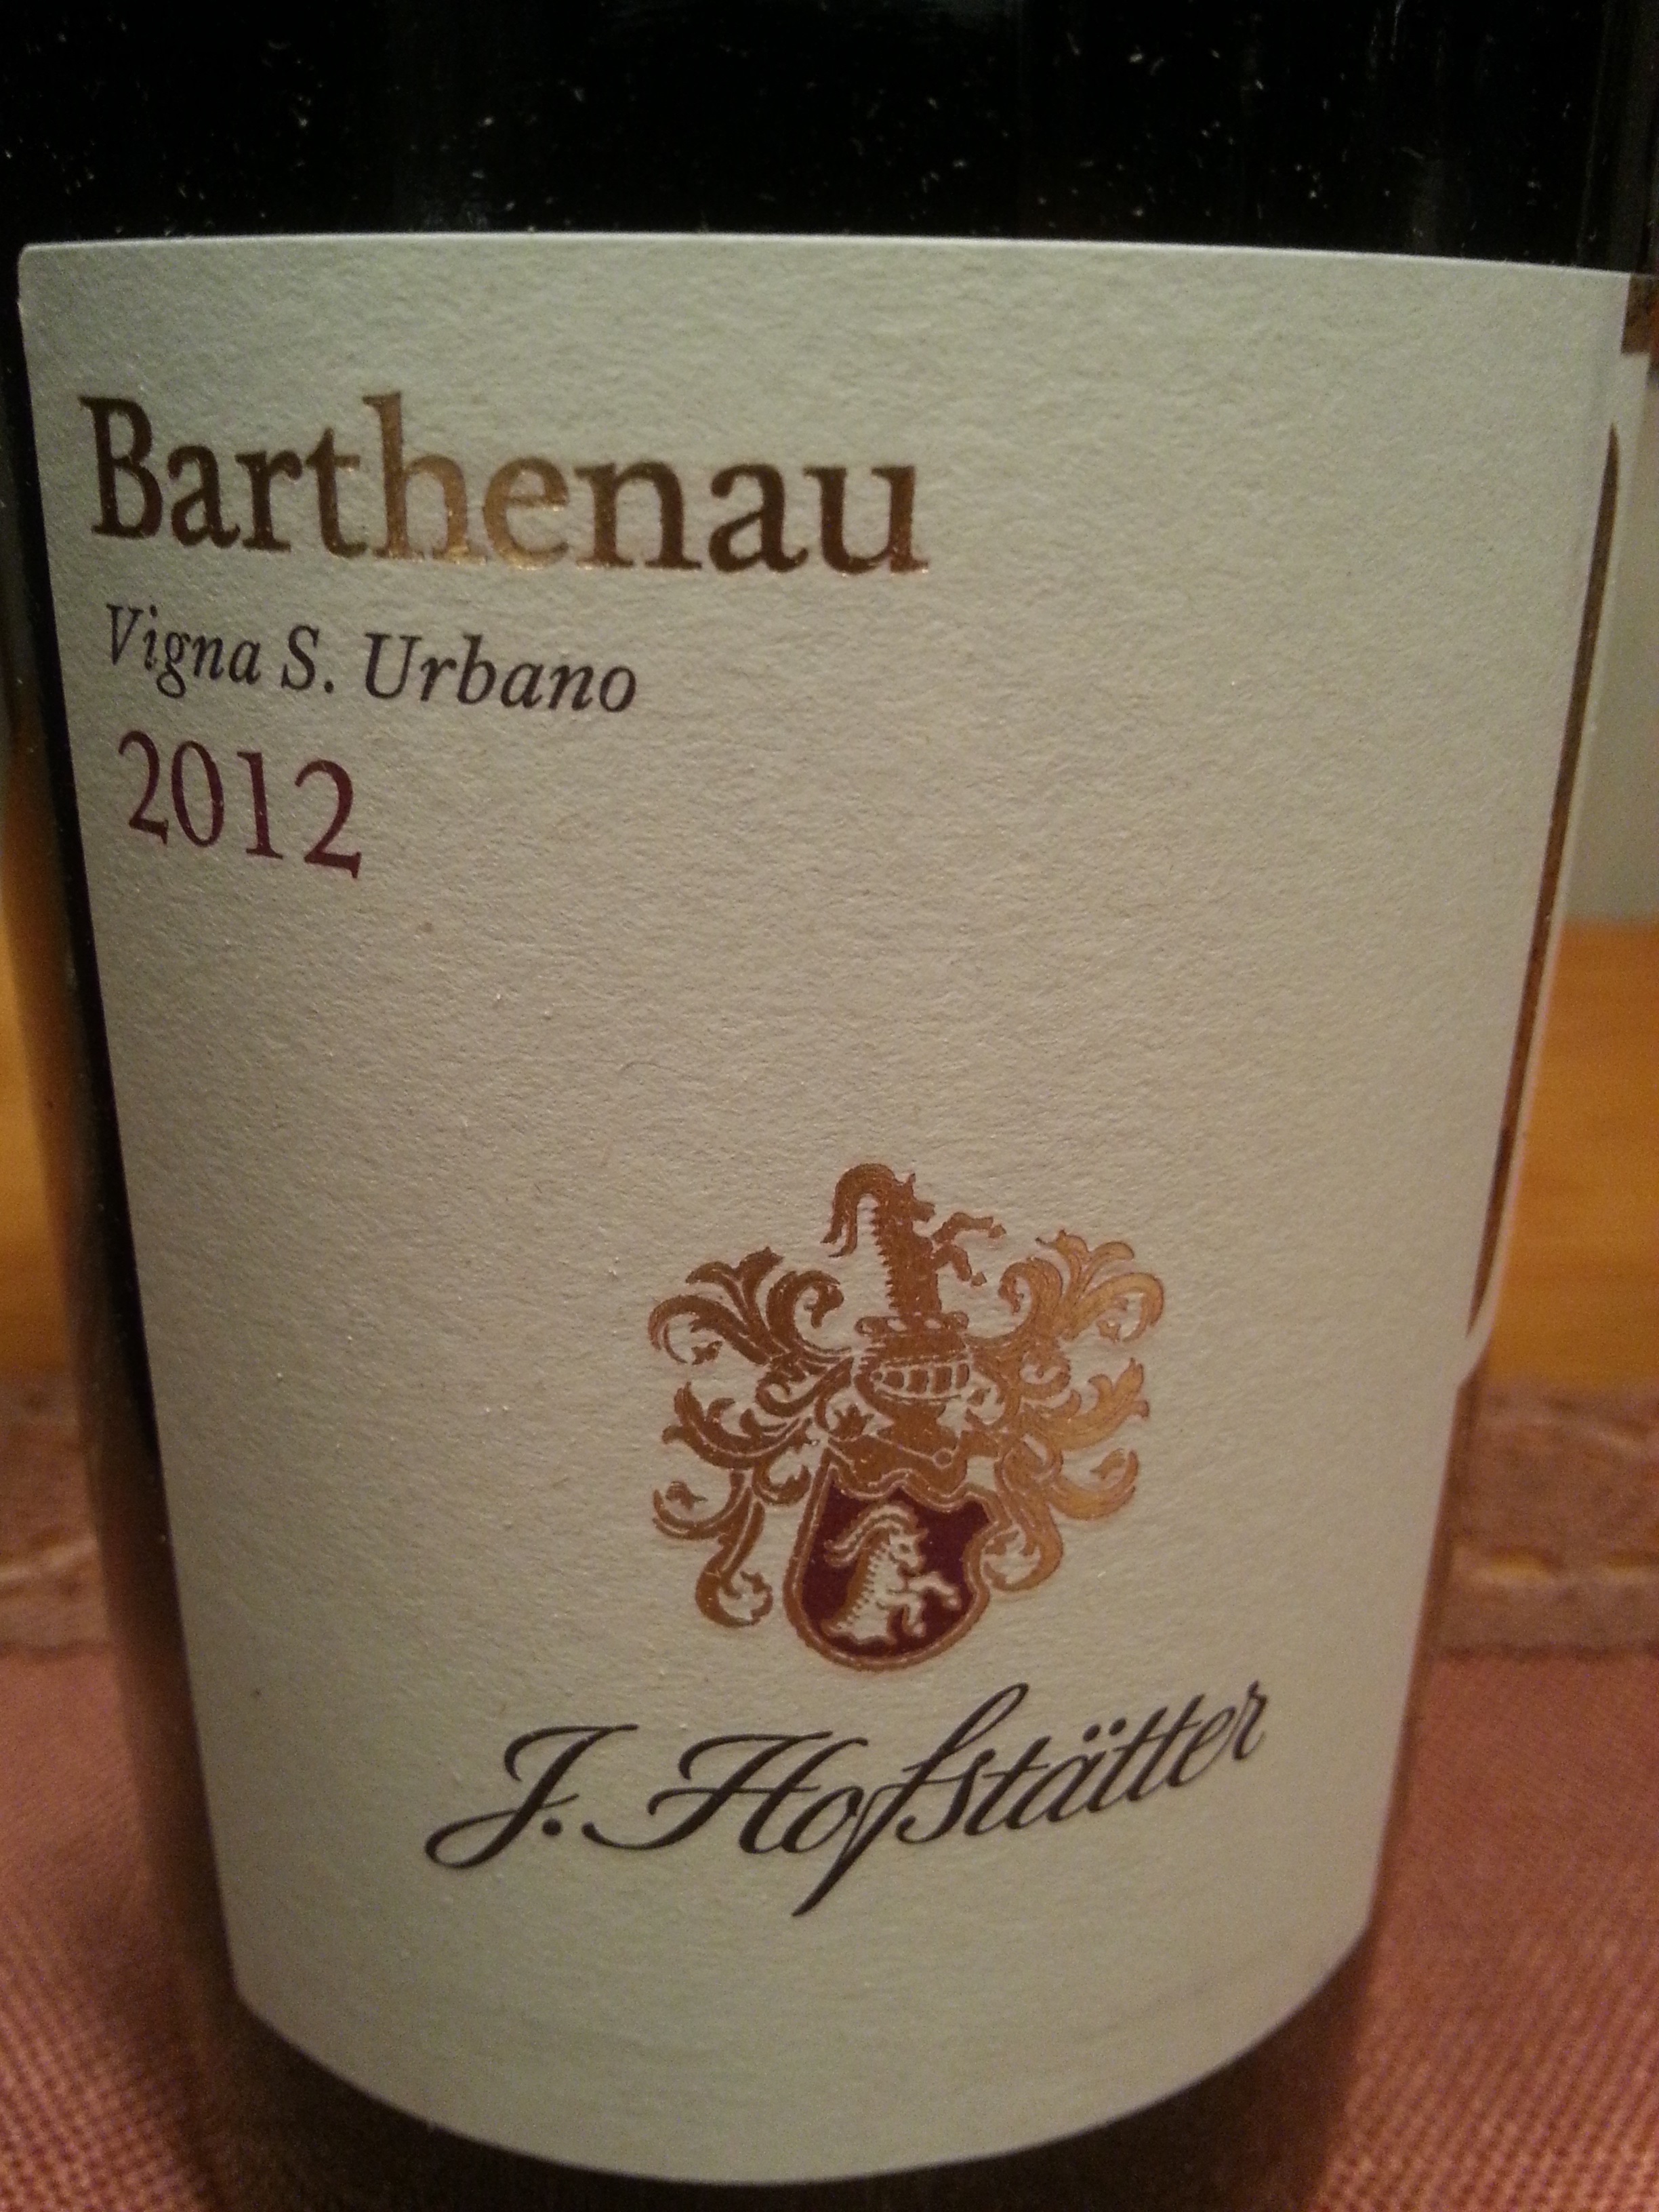 2012 Pinot Nero Barthenau Vigna S. Urbano | Hofstätter